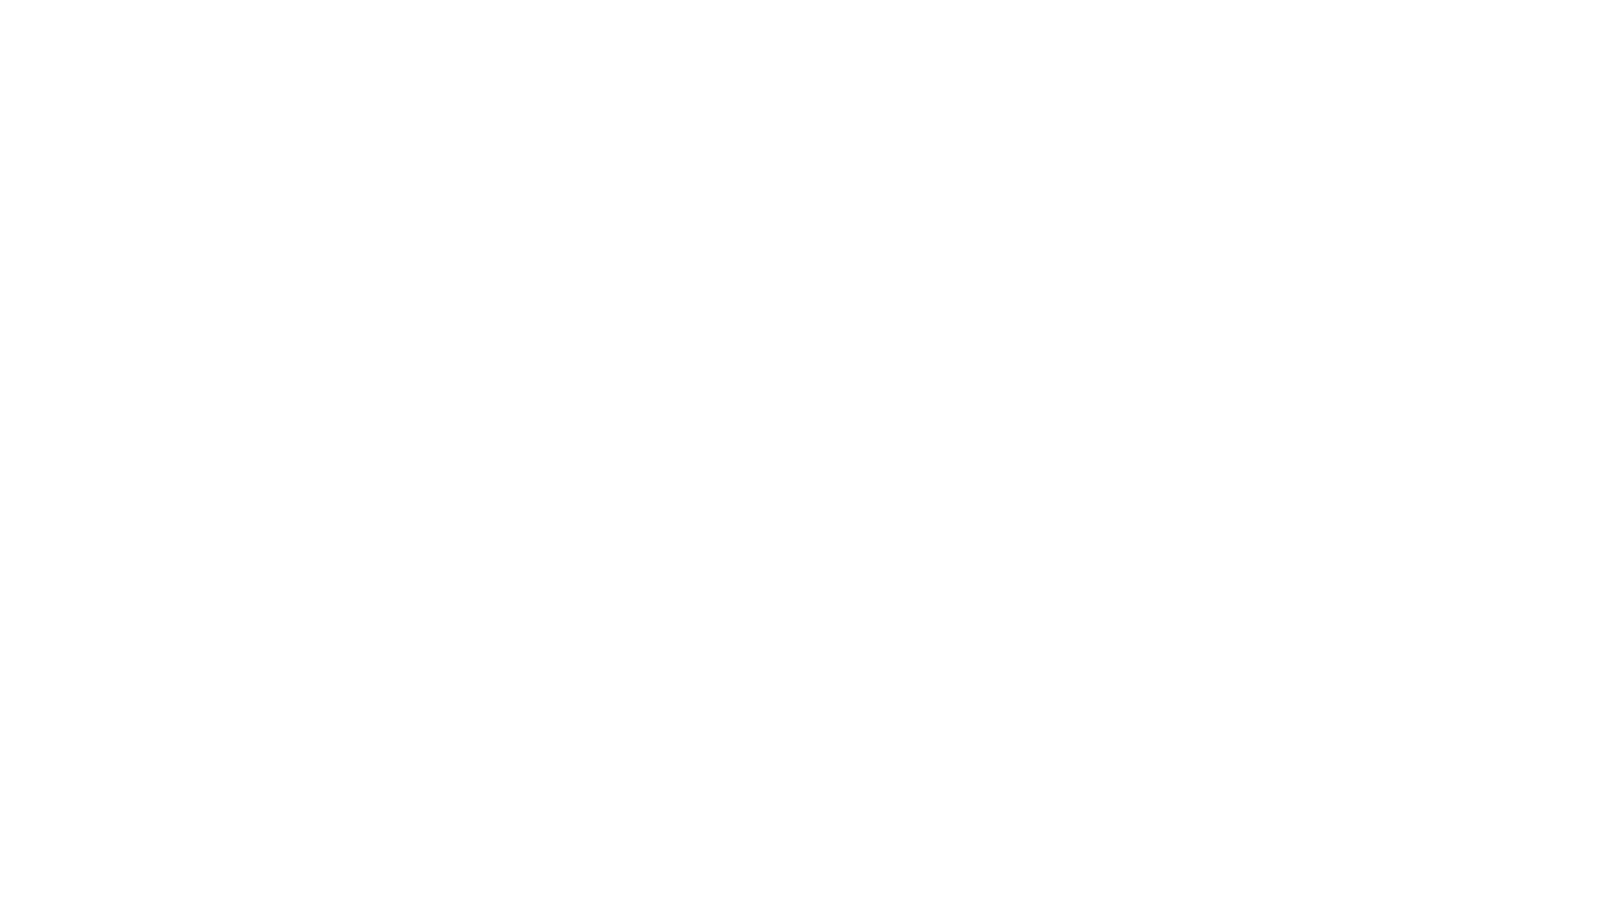 শুরু হচ্ছে আন্তর্জাতিক কলকাতা বইমেলা

আগামী ৪৭তম আন্তর্জাতিক কলকাতা বইমেলার উদ্বোধন ১৮ জানুয়ারি, মেলা চলবে ৩১ জানুয়ারি ২০২৪ পর্যন্ত। মেলার উদ্বোধন করবেন পশ্চিমবঙ্গের মাননীয় মুখ্যমন্ত্রী শ্রীমতী মমতা ব্যানার্জী। সম্মাননীয় অতিথি হিসেবে উপস্থিত থাকবেন বিশিষ্ট কবি সাহিত্যিক ও অন্যান্য গুণিজন। স্থান, বইমেলা প্রাঙ্গণ, সল্টলেক।

প্রথমেই পশ্চিমবঙ্গের মাননীয় মুখ্যমন্ত্রী শ্রীমতী মমতা ব্যানার্জীকে গভীর কৃতজ্ঞতা জানাতে চাই। এই প্রথম প্রকাশনাকে শিল্প হিসেবে তিনি স্বীকৃতি দিয়েছেন। মাননীয়া মুখ্যমন্ত্রীর আনুকূল্যে গিল্ডের প্রতিনিধিরা তাঁর সঙ্গে বিজনেস ডেলিগেশনে স্পেন সফরে গেছিলেন, প্রকাশকরা সুযোগ পেয়েছিলেন বেঙ্গল গ্লোবাল বিজনেস সামিটে ক্রিয়েটিভ ইকনমি সেশনে বক্তব্য রাখা ও অংশগ্রহণ করার। বইমেলায় সার্বিক সহযোগিতার জন্য আমরা  কৃতজ্ঞ পশ্চিমবঙ্গ সরকারের অন্যান্য দপ্তর এবং বিধাননগর পৌরসংস্থার কাছেও।

আপনারা নিশ্চয়ই দেখেছেন, আন্তর্জাতিক কলকাতা বইমেলা ২০২৪ কয়েকদিন এগিয়ে নিয়ে আসতে হয়েছে। এর প্রধান কারণ, বাংলা ও ইংরেজি মাধ্যম স্কুলের বোর্ড পরীক্ষা শুরু হয়ে যাচ্ছে জানুয়ারির শেষ থেকে। মেলার এই সময় পরিবর্তন বইপ্রেমীদের  কাছে সুখবর বলেই মনে করছি, তাঁরা ২ টি শনিবার ও ২টি রবিবার ছাড়াও এবার পাবেন ২৩ ও ২৬ জানুয়ারি ছুটির দিন।

আপনারা জানেন, বর্তমানে আন্তর্জাতিক কলকাতা বইমেলা পৃথিবীর বৃহত্তম পাঠকধন্য বই উৎসব। ২০২৩ সালের বইমেলায় এসেছিলেন ২৬ লক্ষ বইপ্রেমী মানুষ, বই বিক্রির পরিমাণ ২৫ কোটি টাকা। এই অভাবনীয় সাফল্যে আমরা যেমন আনন্দিত, তেমনই কিছুটা চিন্তান্বিতও। কারণ, আগামী বইমেলায় অংশগ্রহণের জন্য অনেক নতুন প্রকাশক আবেদন করেছেন। অথচ বইমেলা প্রাঙ্গণের পরিসর একই আছে। তবু পরিকল্পনা চলছে, কী করে আরও নতুনদের মেলায় জায়গা দেওয়া যায়।

আমরা অত্যন্ত আনন্দিত, ৪৭তম আন্তর্জাতিক কলকাতা বইমেলার ফোকাল থিম কান্ট্রি ইউনাইটেড কিংডম (UK), যে দেশের সঙ্গে আমাদের ঐতিহাসিক, সাংস্কৃতিক, কূটনৈতিক  সম্পর্ক নিবিড়। তাছাড়া, বইমেলার অবিচ্ছেদ্য অংশ ব্রিটিশ কাউন্সিলেরও ২০২৩-২৪ ভারতে উপস্থিতির ৭৫ বছর। এবারের মতো, ১৯৯৮ ও ২০১৫ তে যখন গ্রেট ব্রিটেন থিম ছিল, এবং ২০০৯ তে যখন থিম ছিল স্কটল্যান্ড, তখনও তারা প্রধান ভূমিকা পালন করেছেন।
আজ আমাদের মধ্যে রয়েছেন পূর্ব ও উত্তর-পূর্ব ভারতের ব্রিটিশ উপরাষ্ট্রদূত মিস্টার অ্যান্ড্রু ফ্লেমিং এবং ব্রিটিশ কাউন্সিলের পূর্ব ও উত্তর-পূর্ব ভারতের ডিরেক্টর ড. দেবাঞ্জন চক্রবর্তী। বইমেলায় ফোকাল থিম হিসেবে অংশগ্রহণের বিষয়ে তাঁদের কাছ থেকে আমরা শুনব।
 
প্রতিবছরের মতো আগামী বইমেলায় অংশগ্রহণ করছেন আমেরিকা, ফ্রান্স, ইতালি, স্পেন, থাইল্যান্ড, অস্ট্রেলিয়া, বাংলাদেশ, পেরু, আর্জেন্টিনা, কলম্বিয়া প্রভৃতি দেশ, জার্মানি থাকছেন ১২ বছর পর। এছাড়া থাকছে ভারতের অন্যান্য রাজ্য, যেমন দিল্লি, উত্তরপ্রদেশ, মধ্যপ্রদেশ, হরিয়ানা, পাঞ্জাব, তামিলনাডু, গুজরাট, মহারাষ্ট্র, বিহার, অসম, ঝাড়খন্ড, তেলেঙ্গানা, কেরালা, উড়িষ্যা... ইত্যাদি রাজ্যের প্রকাশনাও থাকছে। যথারীতি  থাকবে লিটল ম্যাগাজিন প্যাভিলিয়ন, চিলড্রেনস প্যাভিলিয়ন ও অন্যান্য আকর্ষণও।
আন্তর্জাতিক কলকাতা বইমেলার অন্যতম আকর্ষণ, তিনদিনের কলকাতা লিটারেচার ফেস্টিভ্যাল,  KLF, অনুষ্ঠিত হবে ২৬ থেকে ২৮ জানুয়ারি ২০২৪।